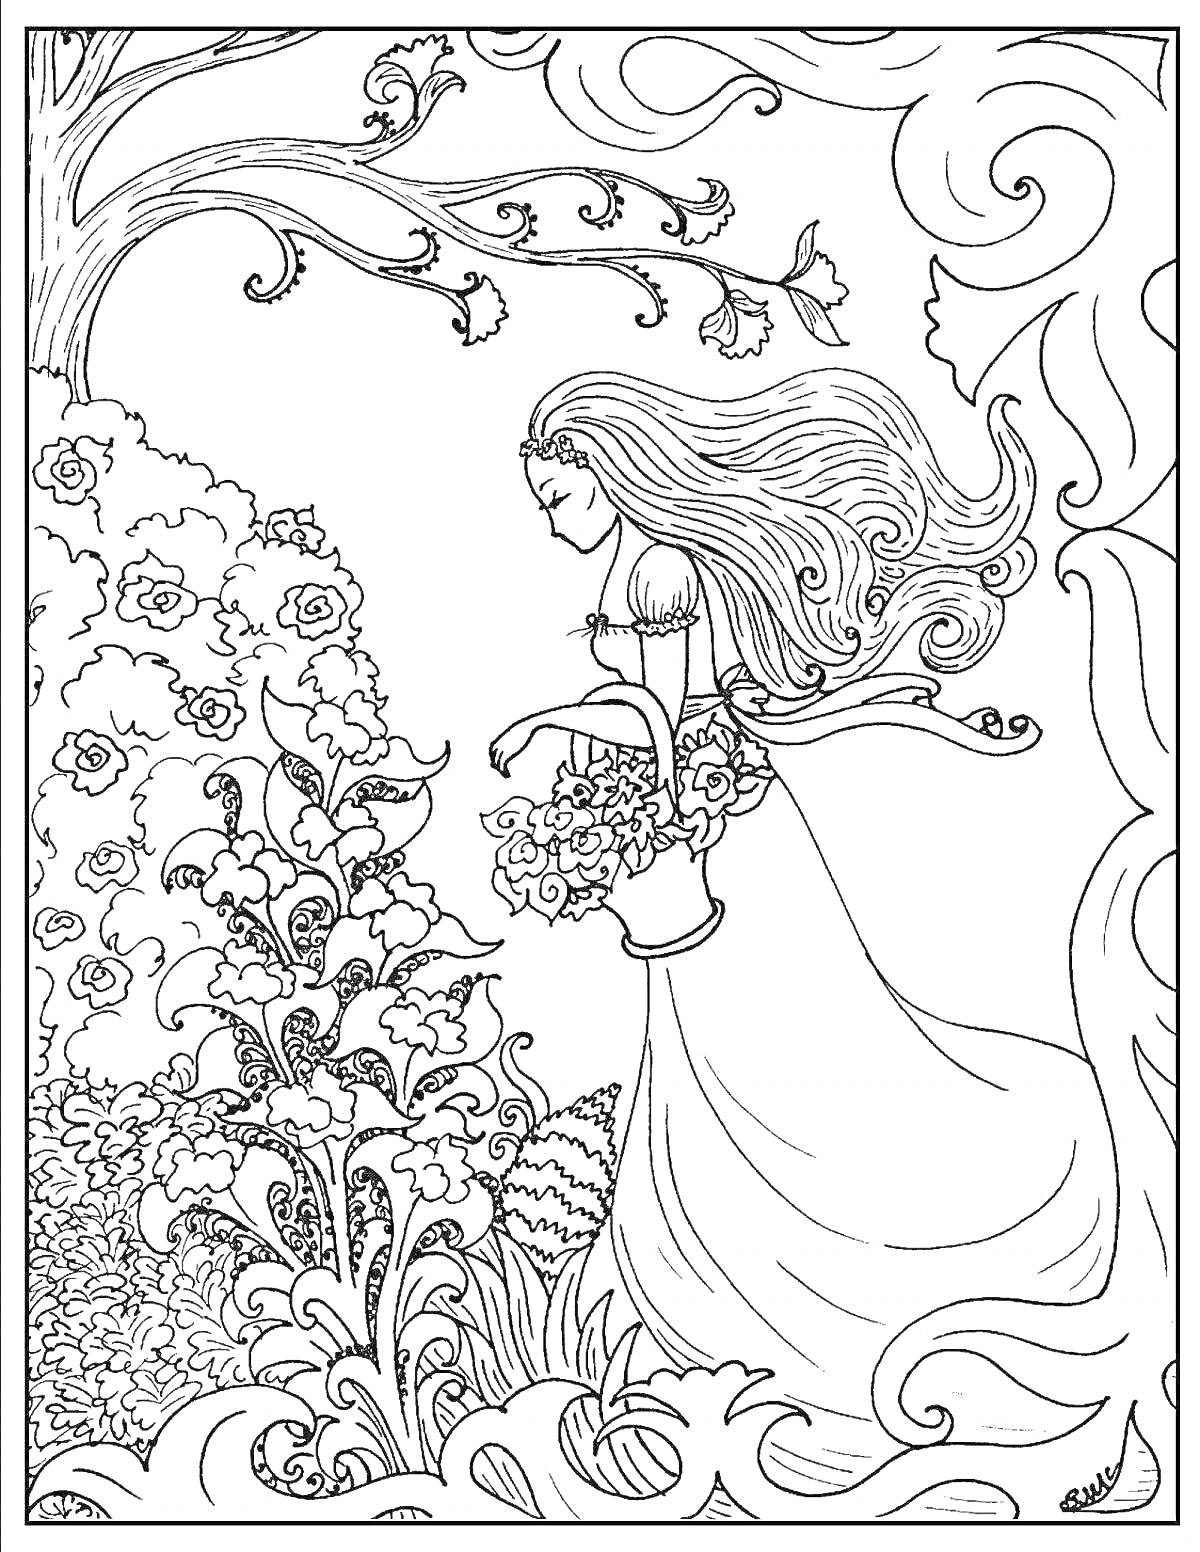 РаскраскаДевушка весна с длинными волосами в длинном платье собирает цветы, фон из ветвей и цветущих кустов